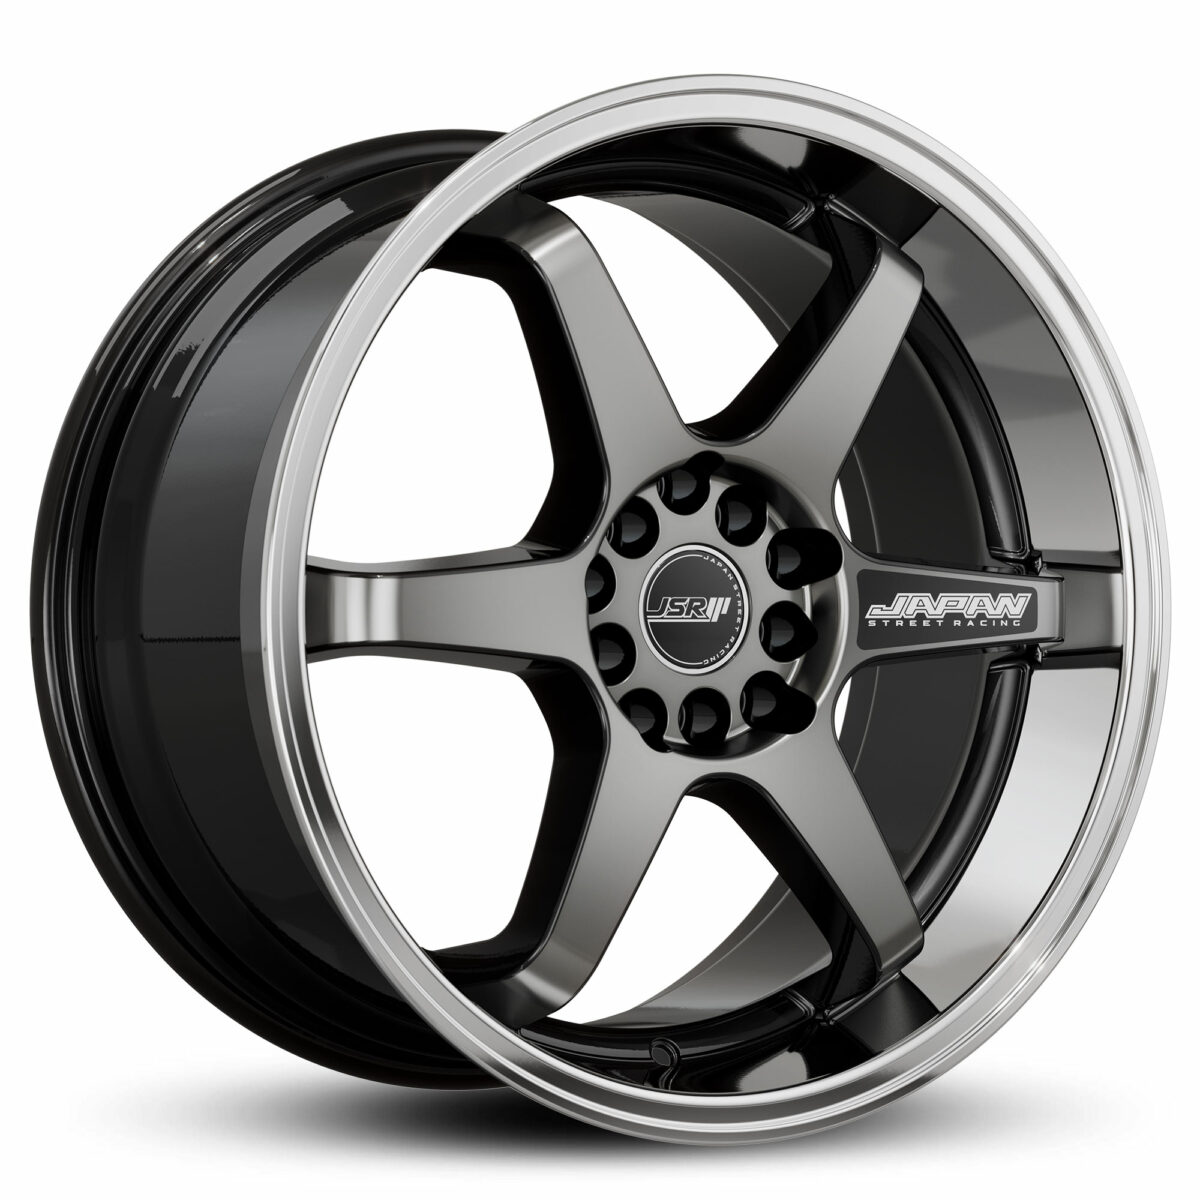 Racing Wheels JSR ST21 Black Tinted JDM Wheels Japan Street Racing 18 inch Rims